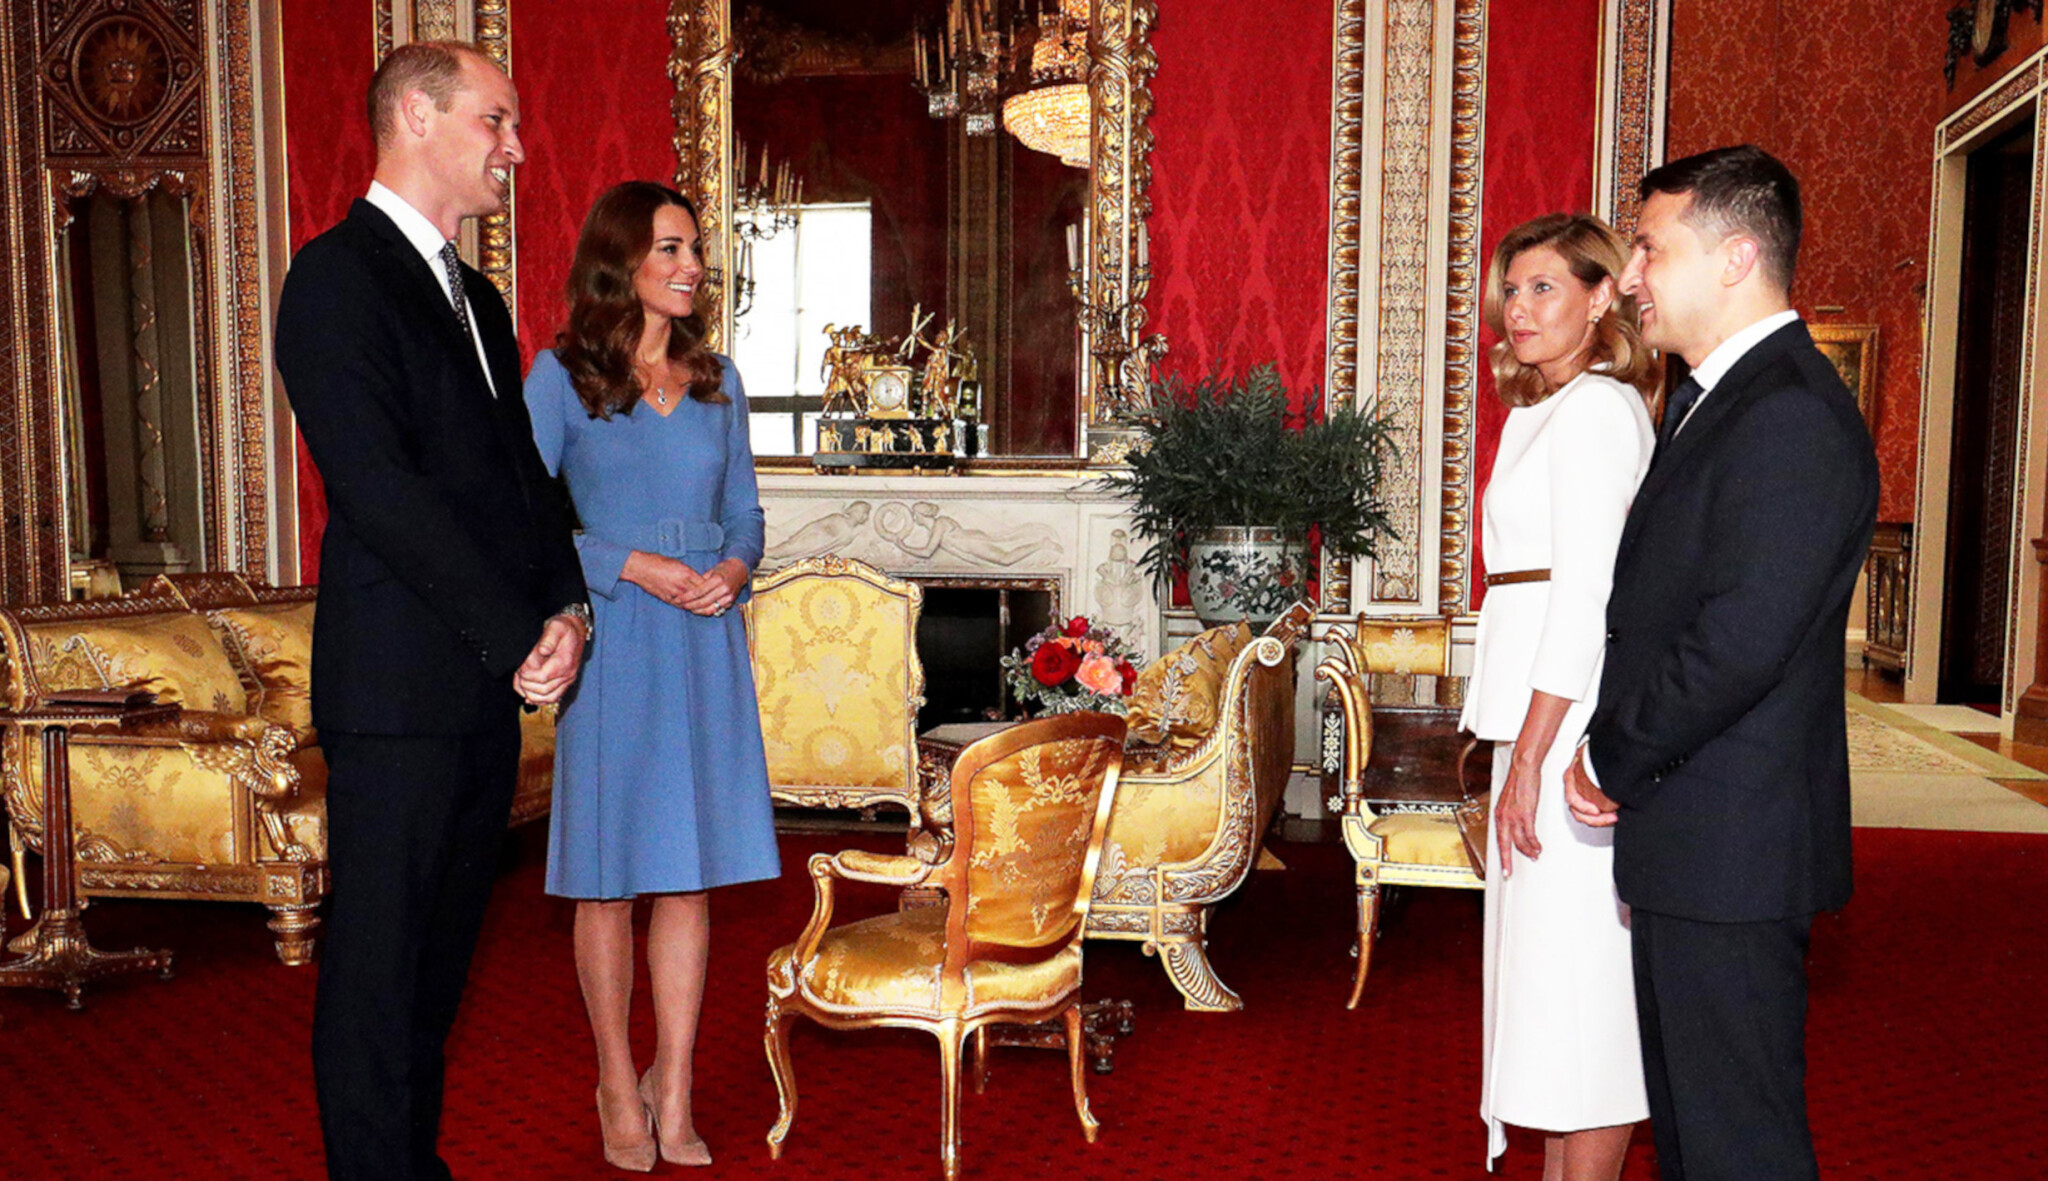 Štědrý dar i gesta účasti. Královna i její rodina porušila zásady, veřejně podpořili Ukrajinu